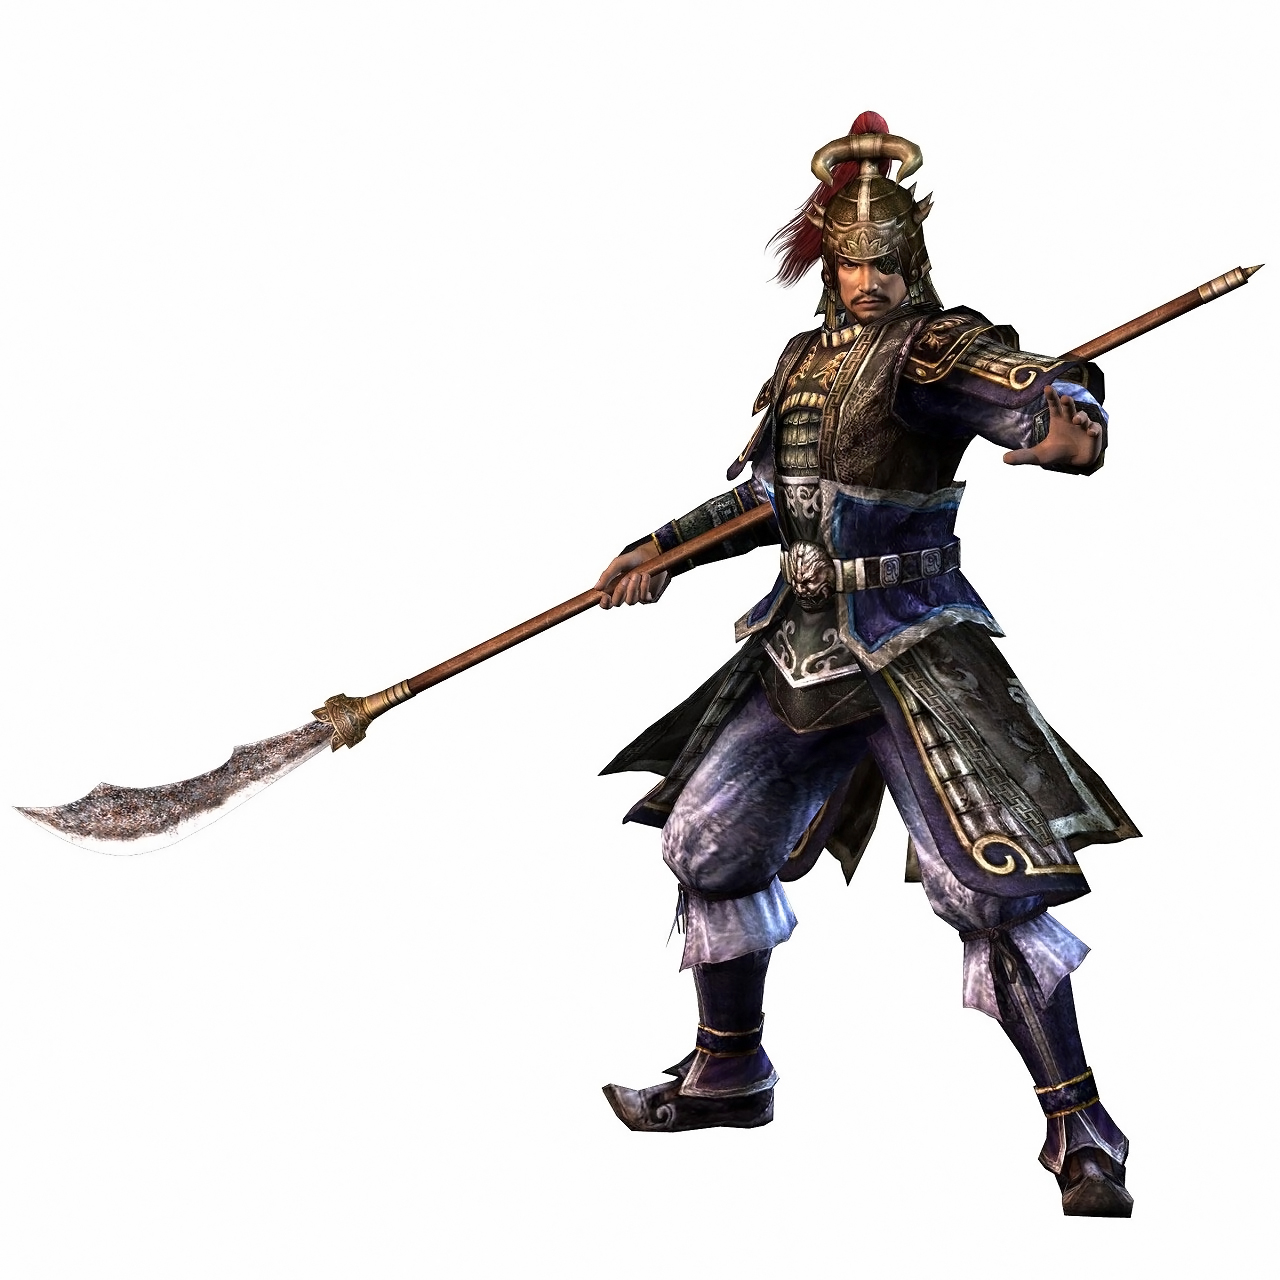 Samurai+warriors+characters